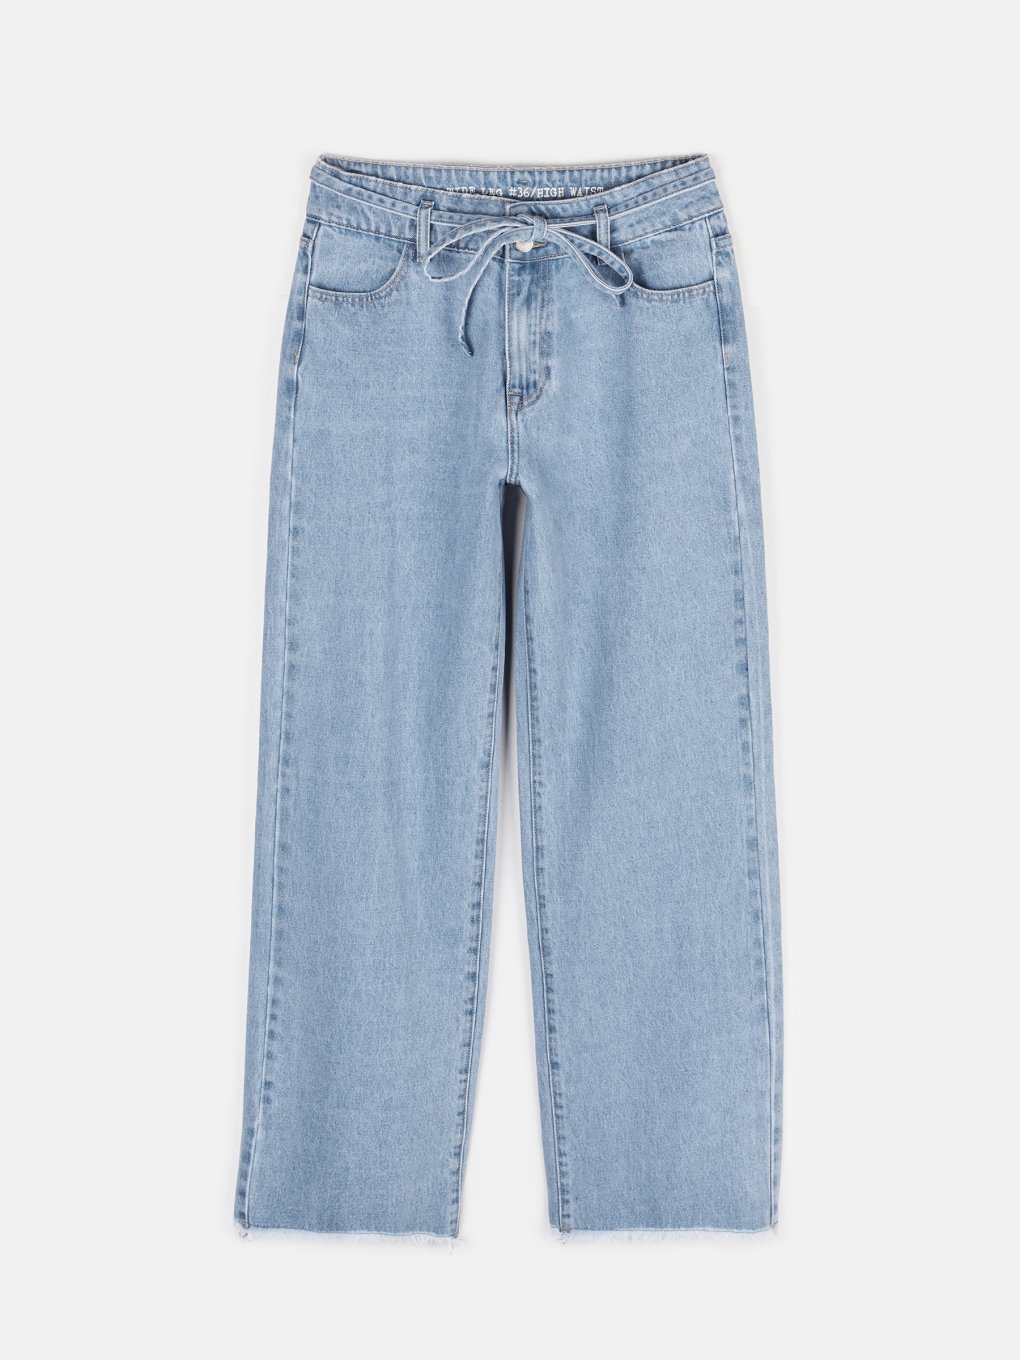 Szerokie jeansy damskie basic